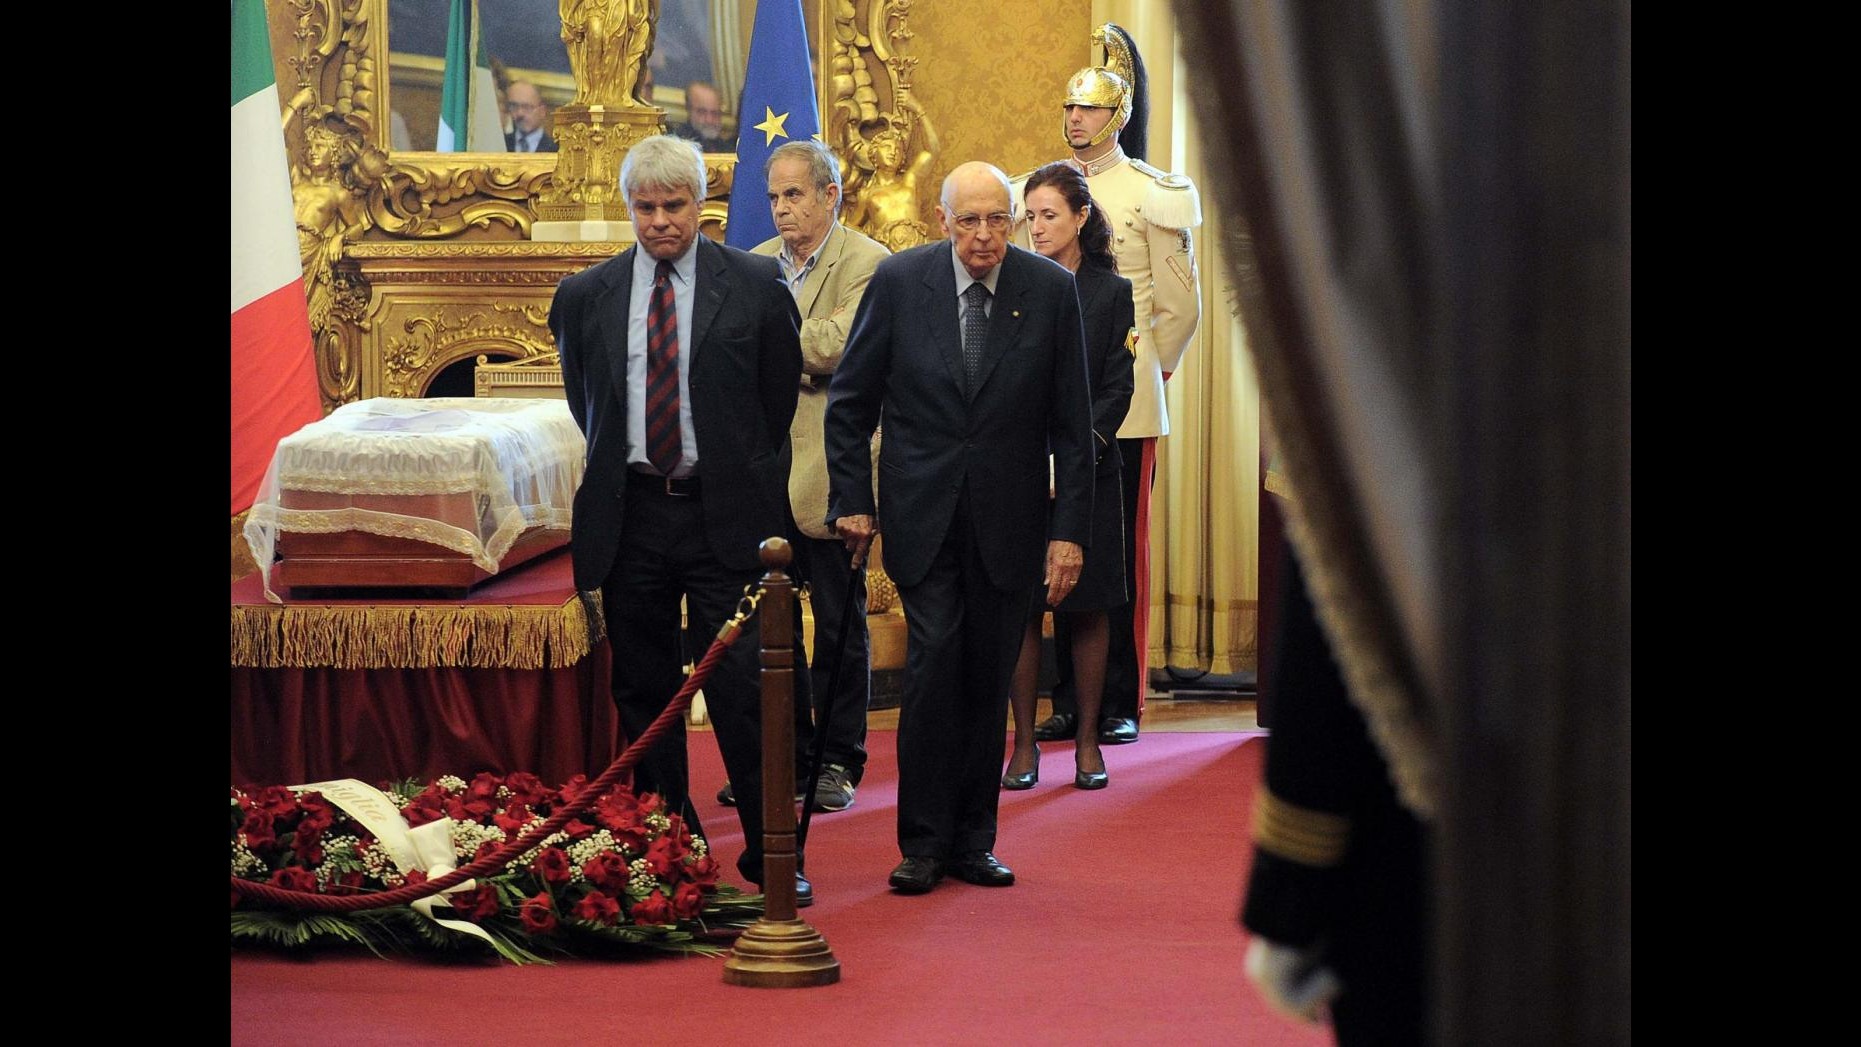 Ingrao, Mattarella alla camera ardente: previsti per domani alle 11 i funerali di Stato